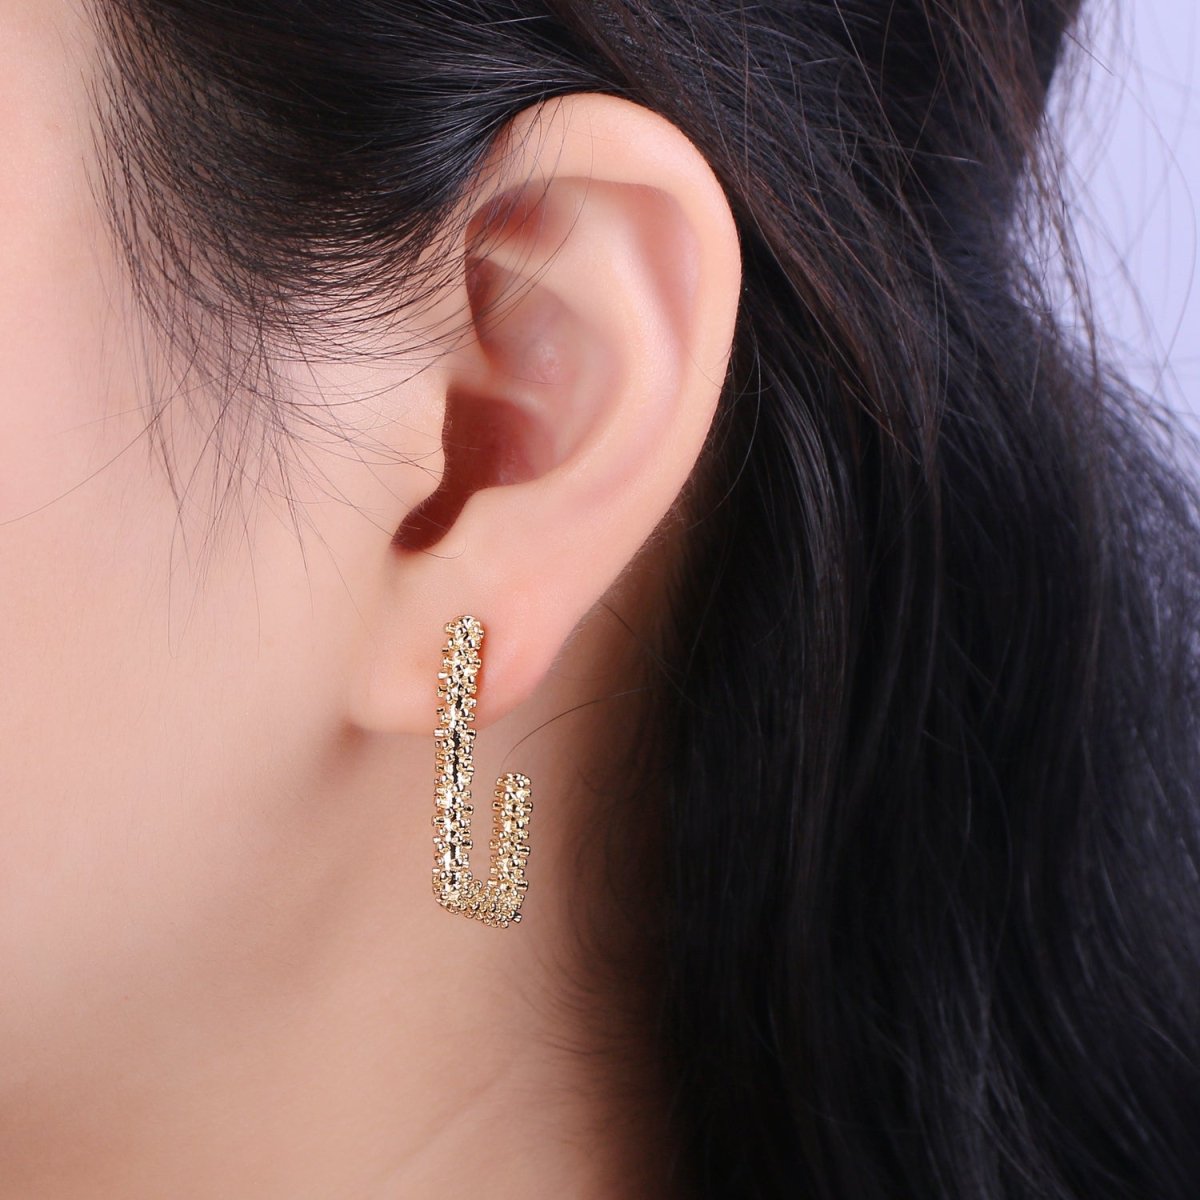 Cute Modern Earrings - Gold Semi Hoop Earrings - Minimalist Hoop Earrings - Dainty Gold C Hoop Earring T-243 - DLUXCA